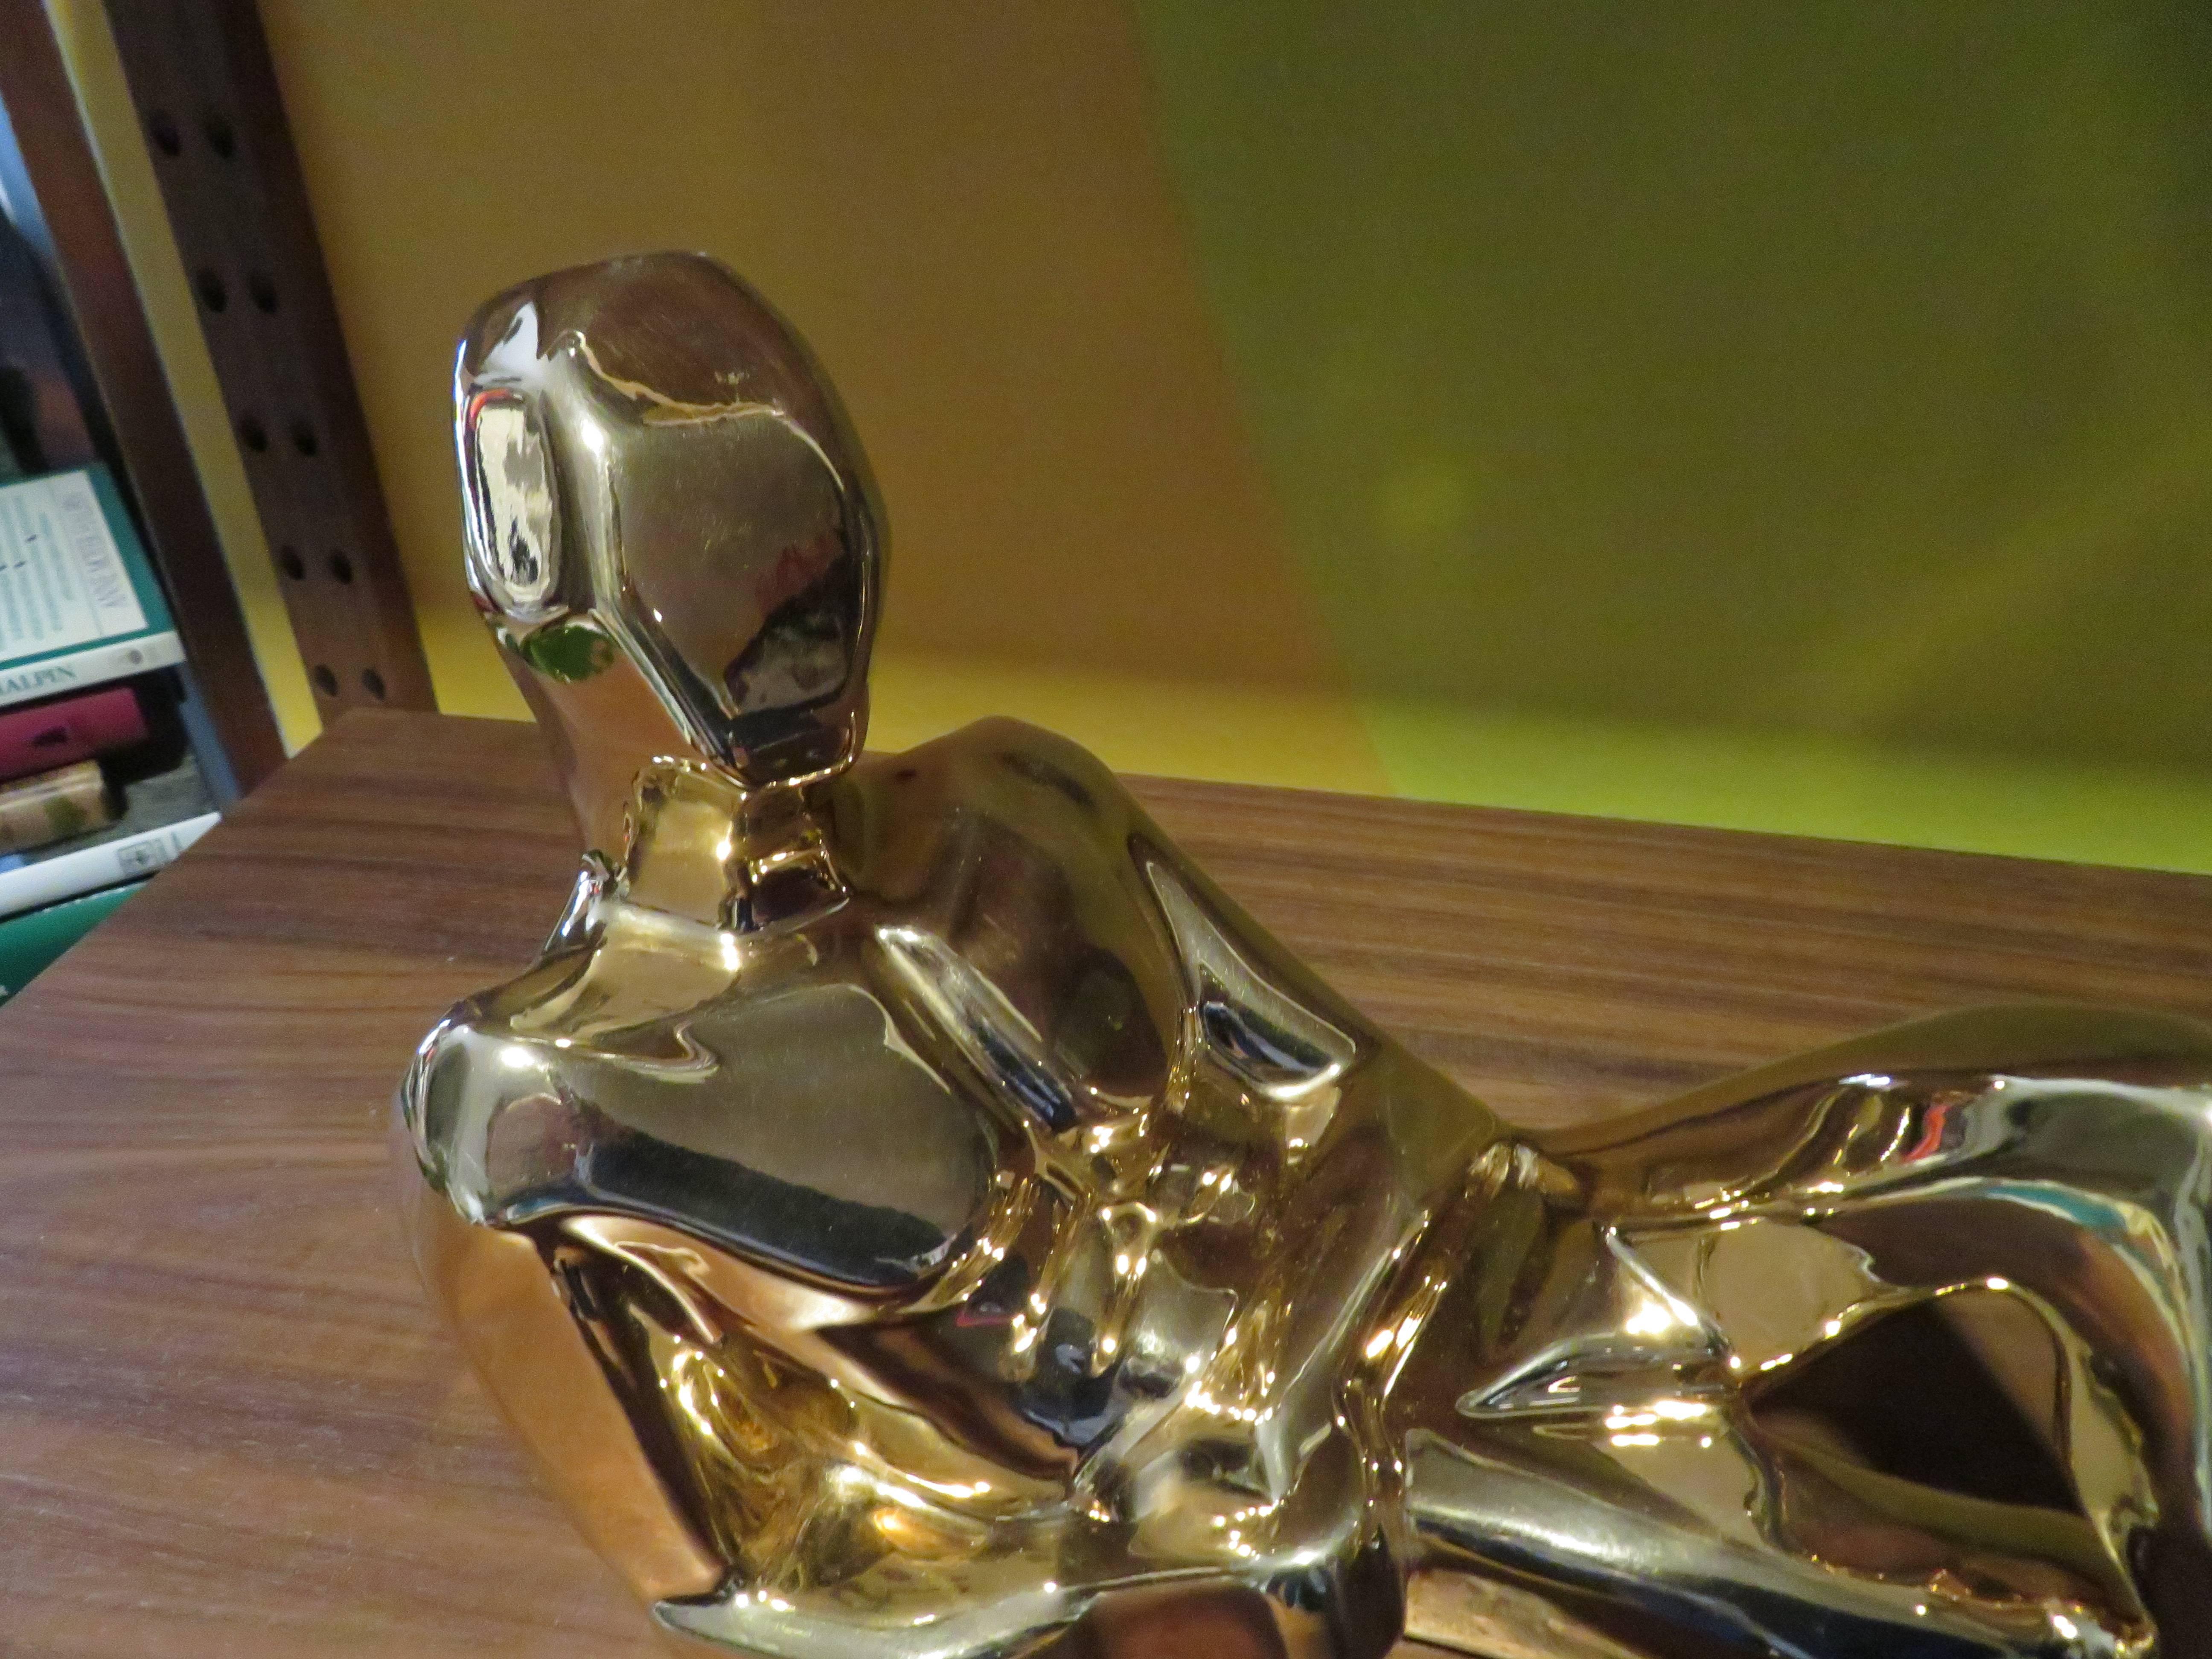 Sculpture figurative chic de style moderniste du milieu du siècle, en or plaqué, par Jaru, Californie. Cet exemple représente un homme allongé au repos. Le clin d'œil de l'artiste au cubisme est évident ici, de même qu'un style très lisse et